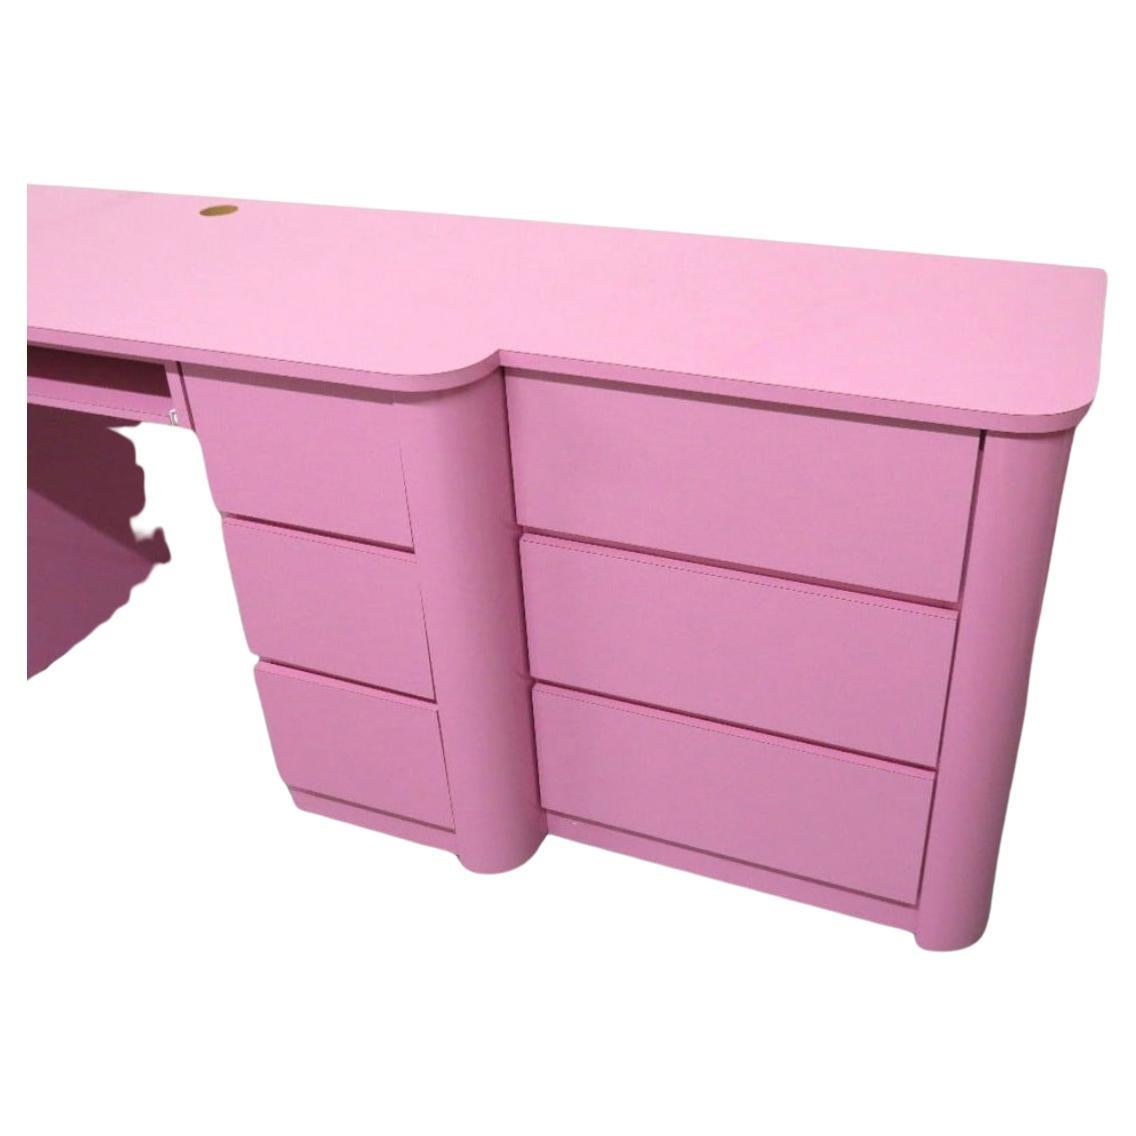 Schöne Post moderne benutzerdefinierte Bubblegum rosa Glanz Laminat 9 Schublade Knieloch Desk Kommode oder Kredenz circa 1980. Sehr sauber innen und außen fast wie neu. Sehen Sie sich Fotos an. Es gibt (3) Schubladen auf der linken Seite und (6)